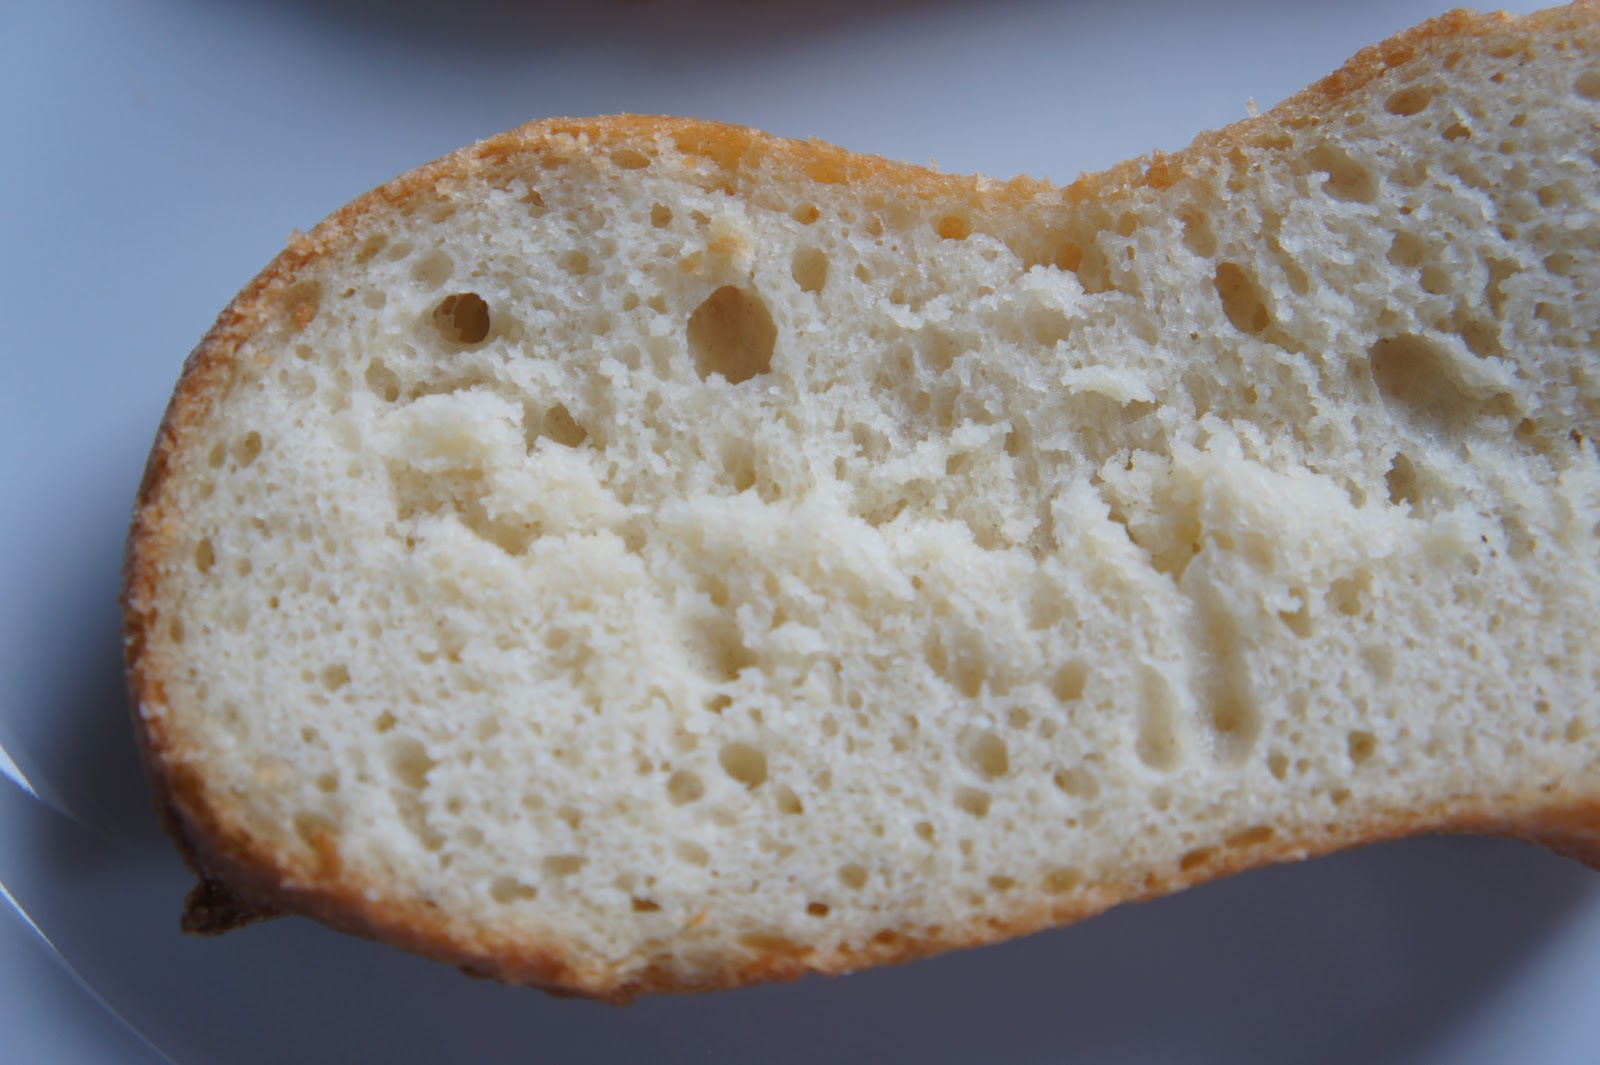 neues glutenfreies Brot von Schnitzer! ♥ Ein glutenfreier Blog